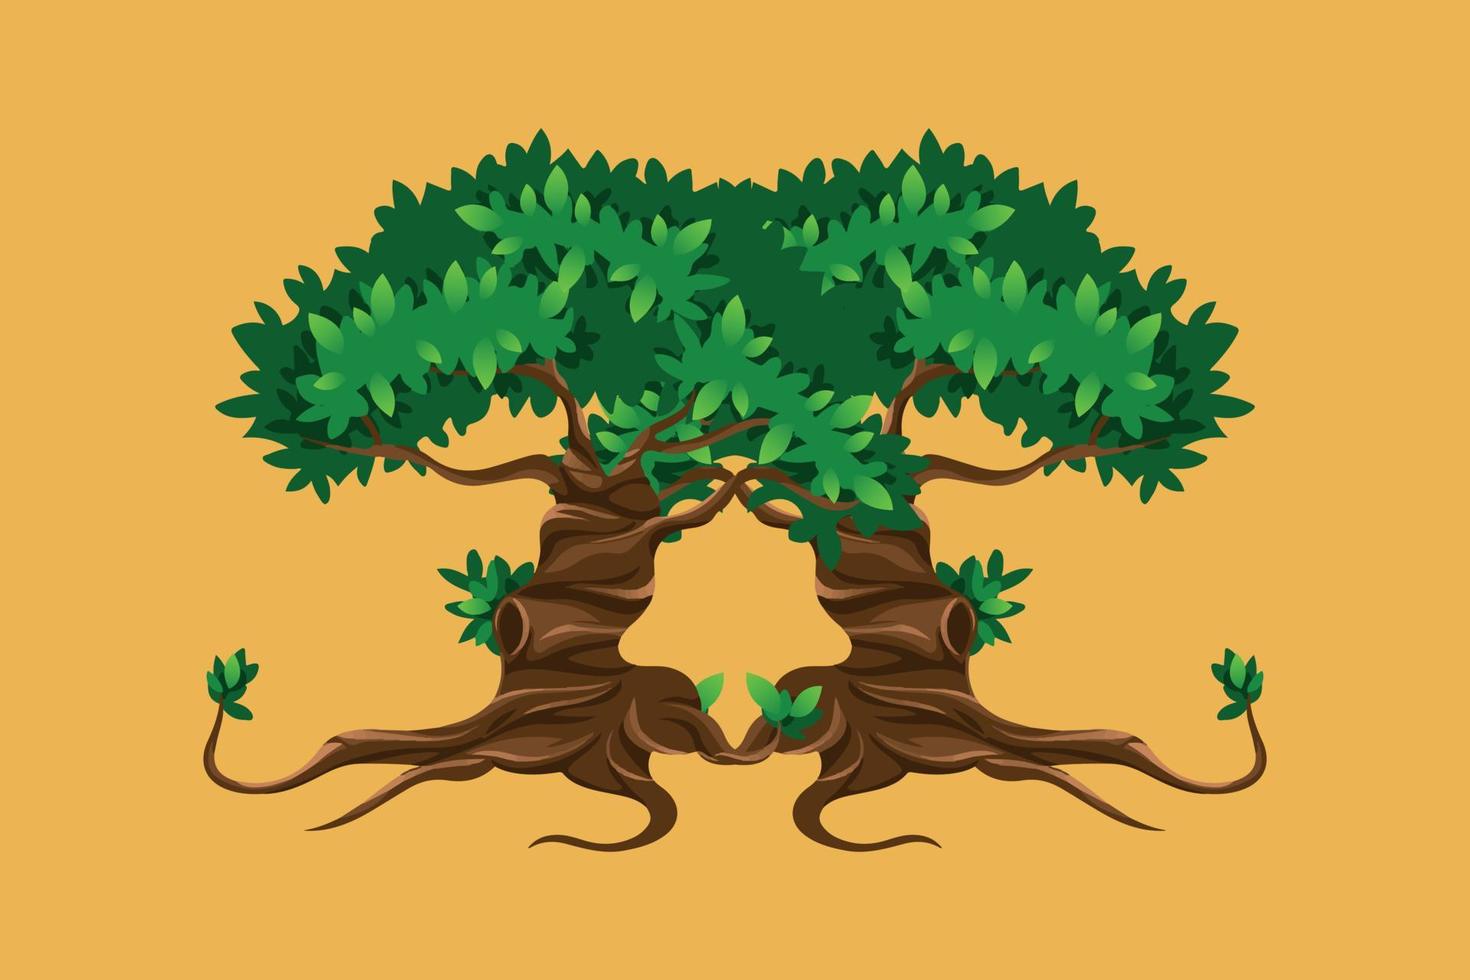 ilustração vetorial de uma árvore adequada para recursos de livros de histórias infantis, cartazes, etc. vetor